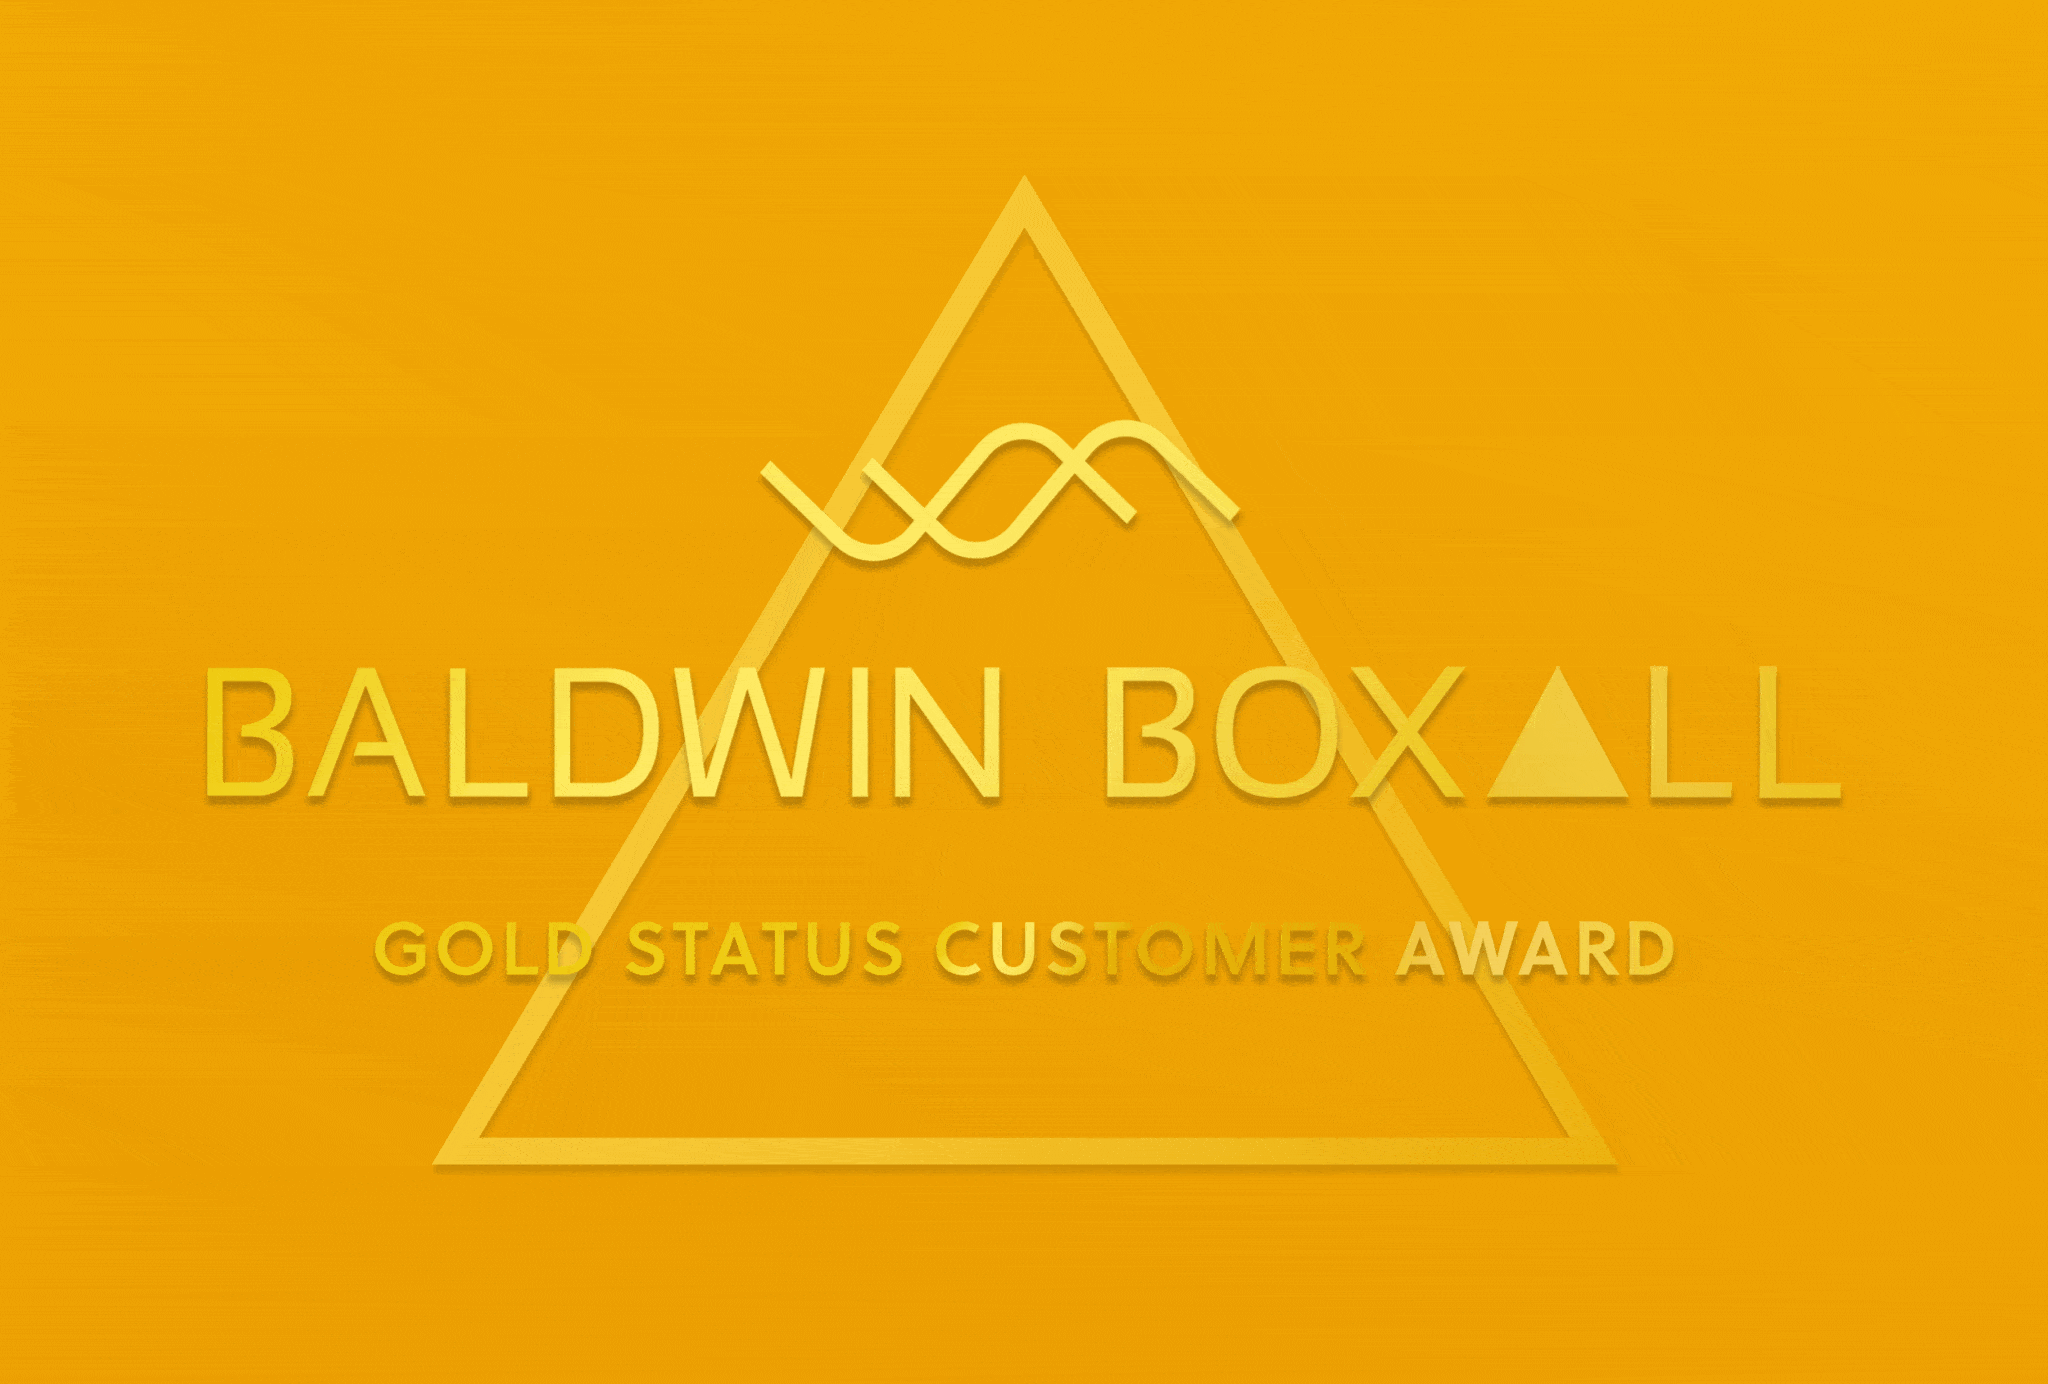 Baldwin Boxall Gold Status Customer Award